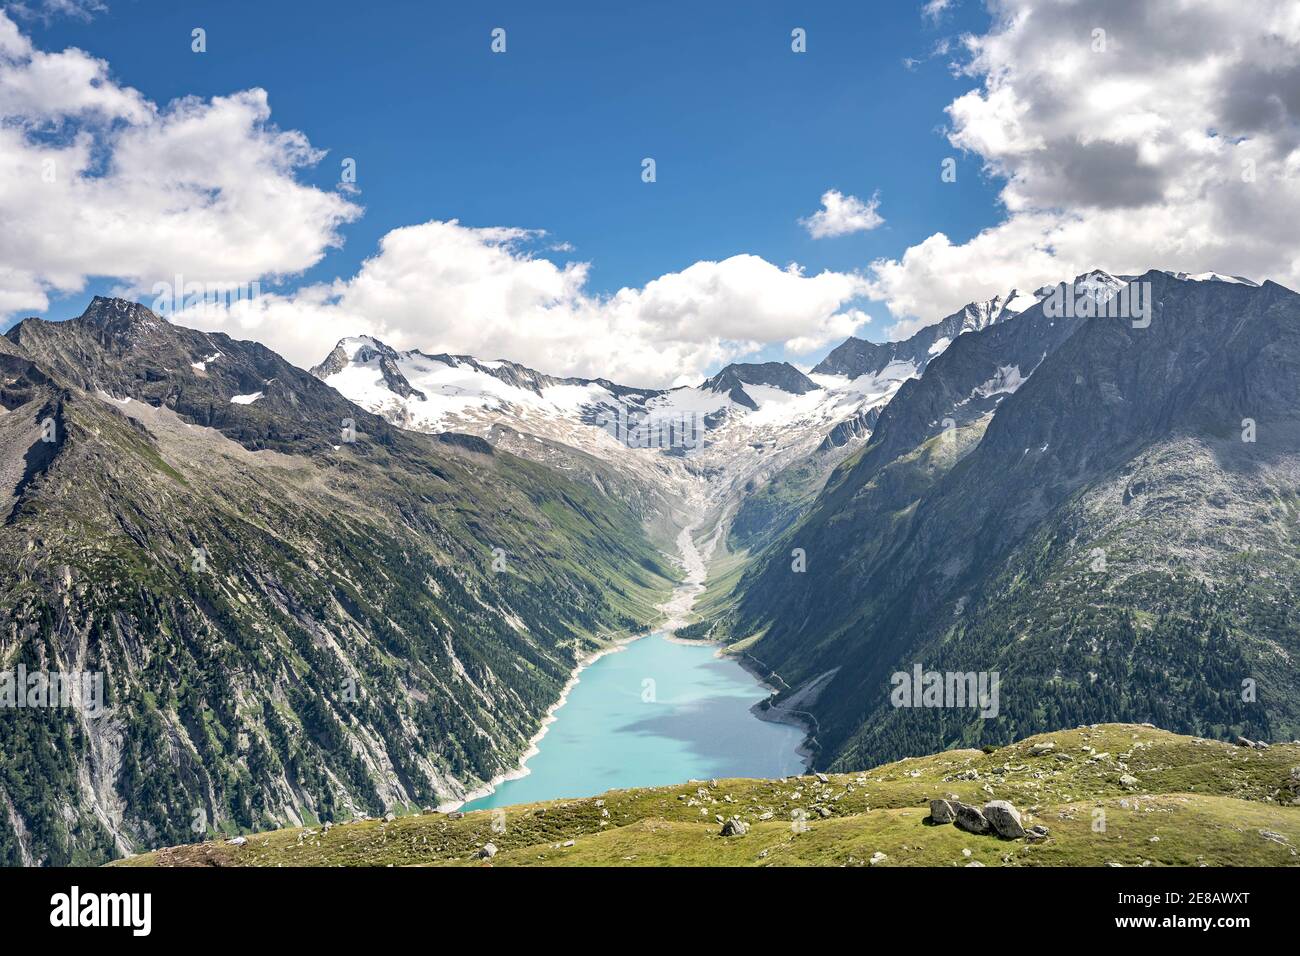 Breathtaking view of schlegeisspeicher glacier reservoir in Zillertal alps in Austria Stock Photo